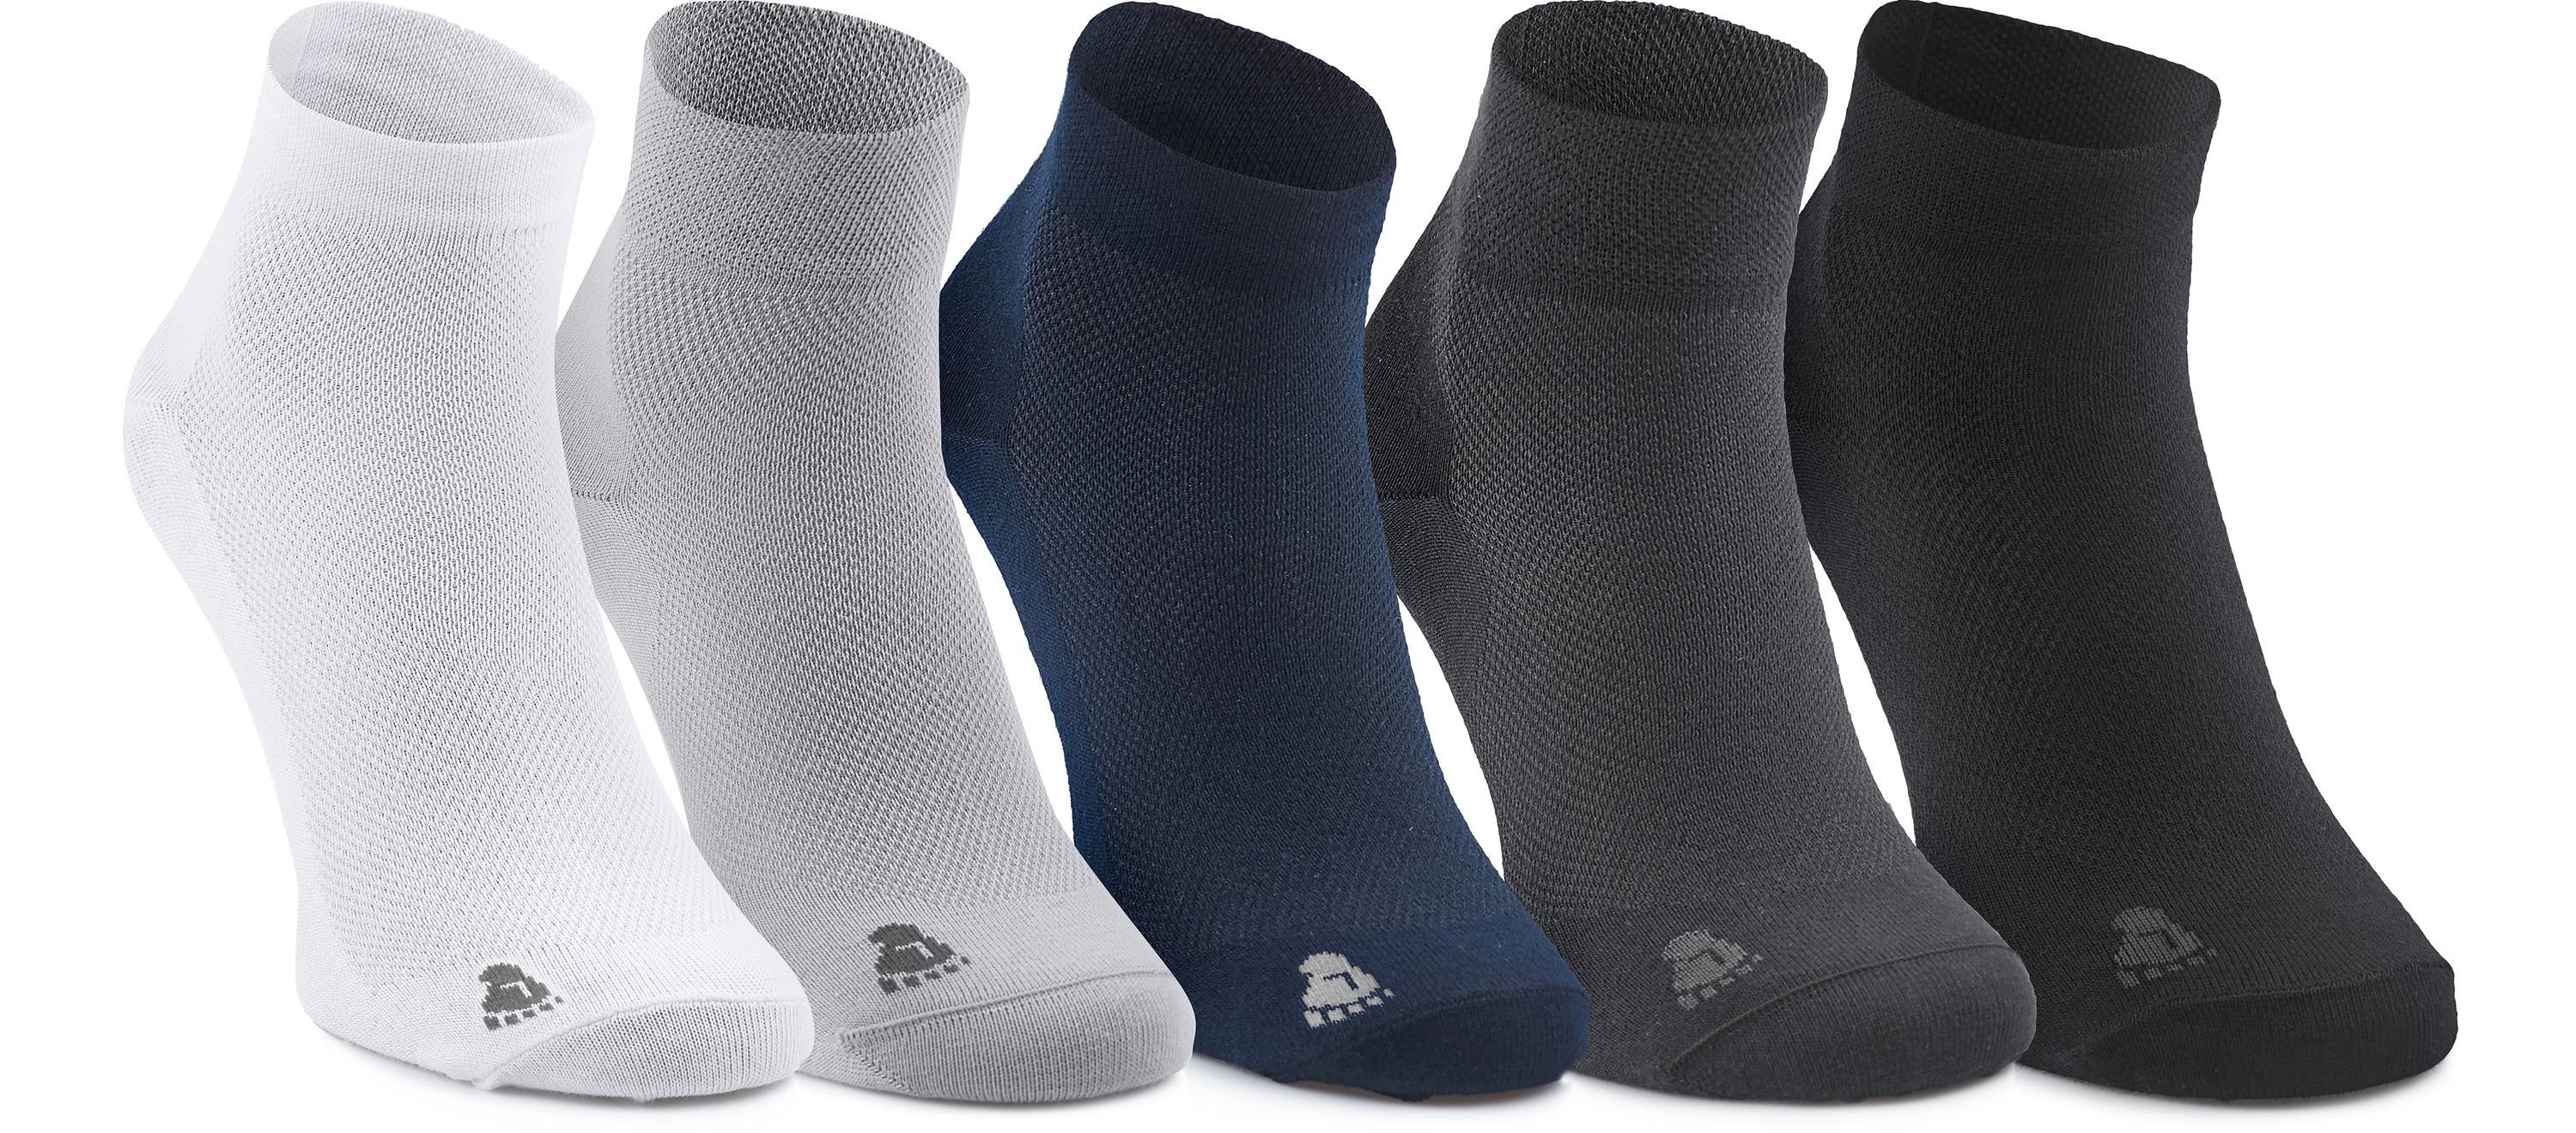 Ladeheid Socken Unisex 5 Pack Socken aus Baumwolle LASS0002 Schwarz/Weiß/Navy/Hellgrau/Graphite